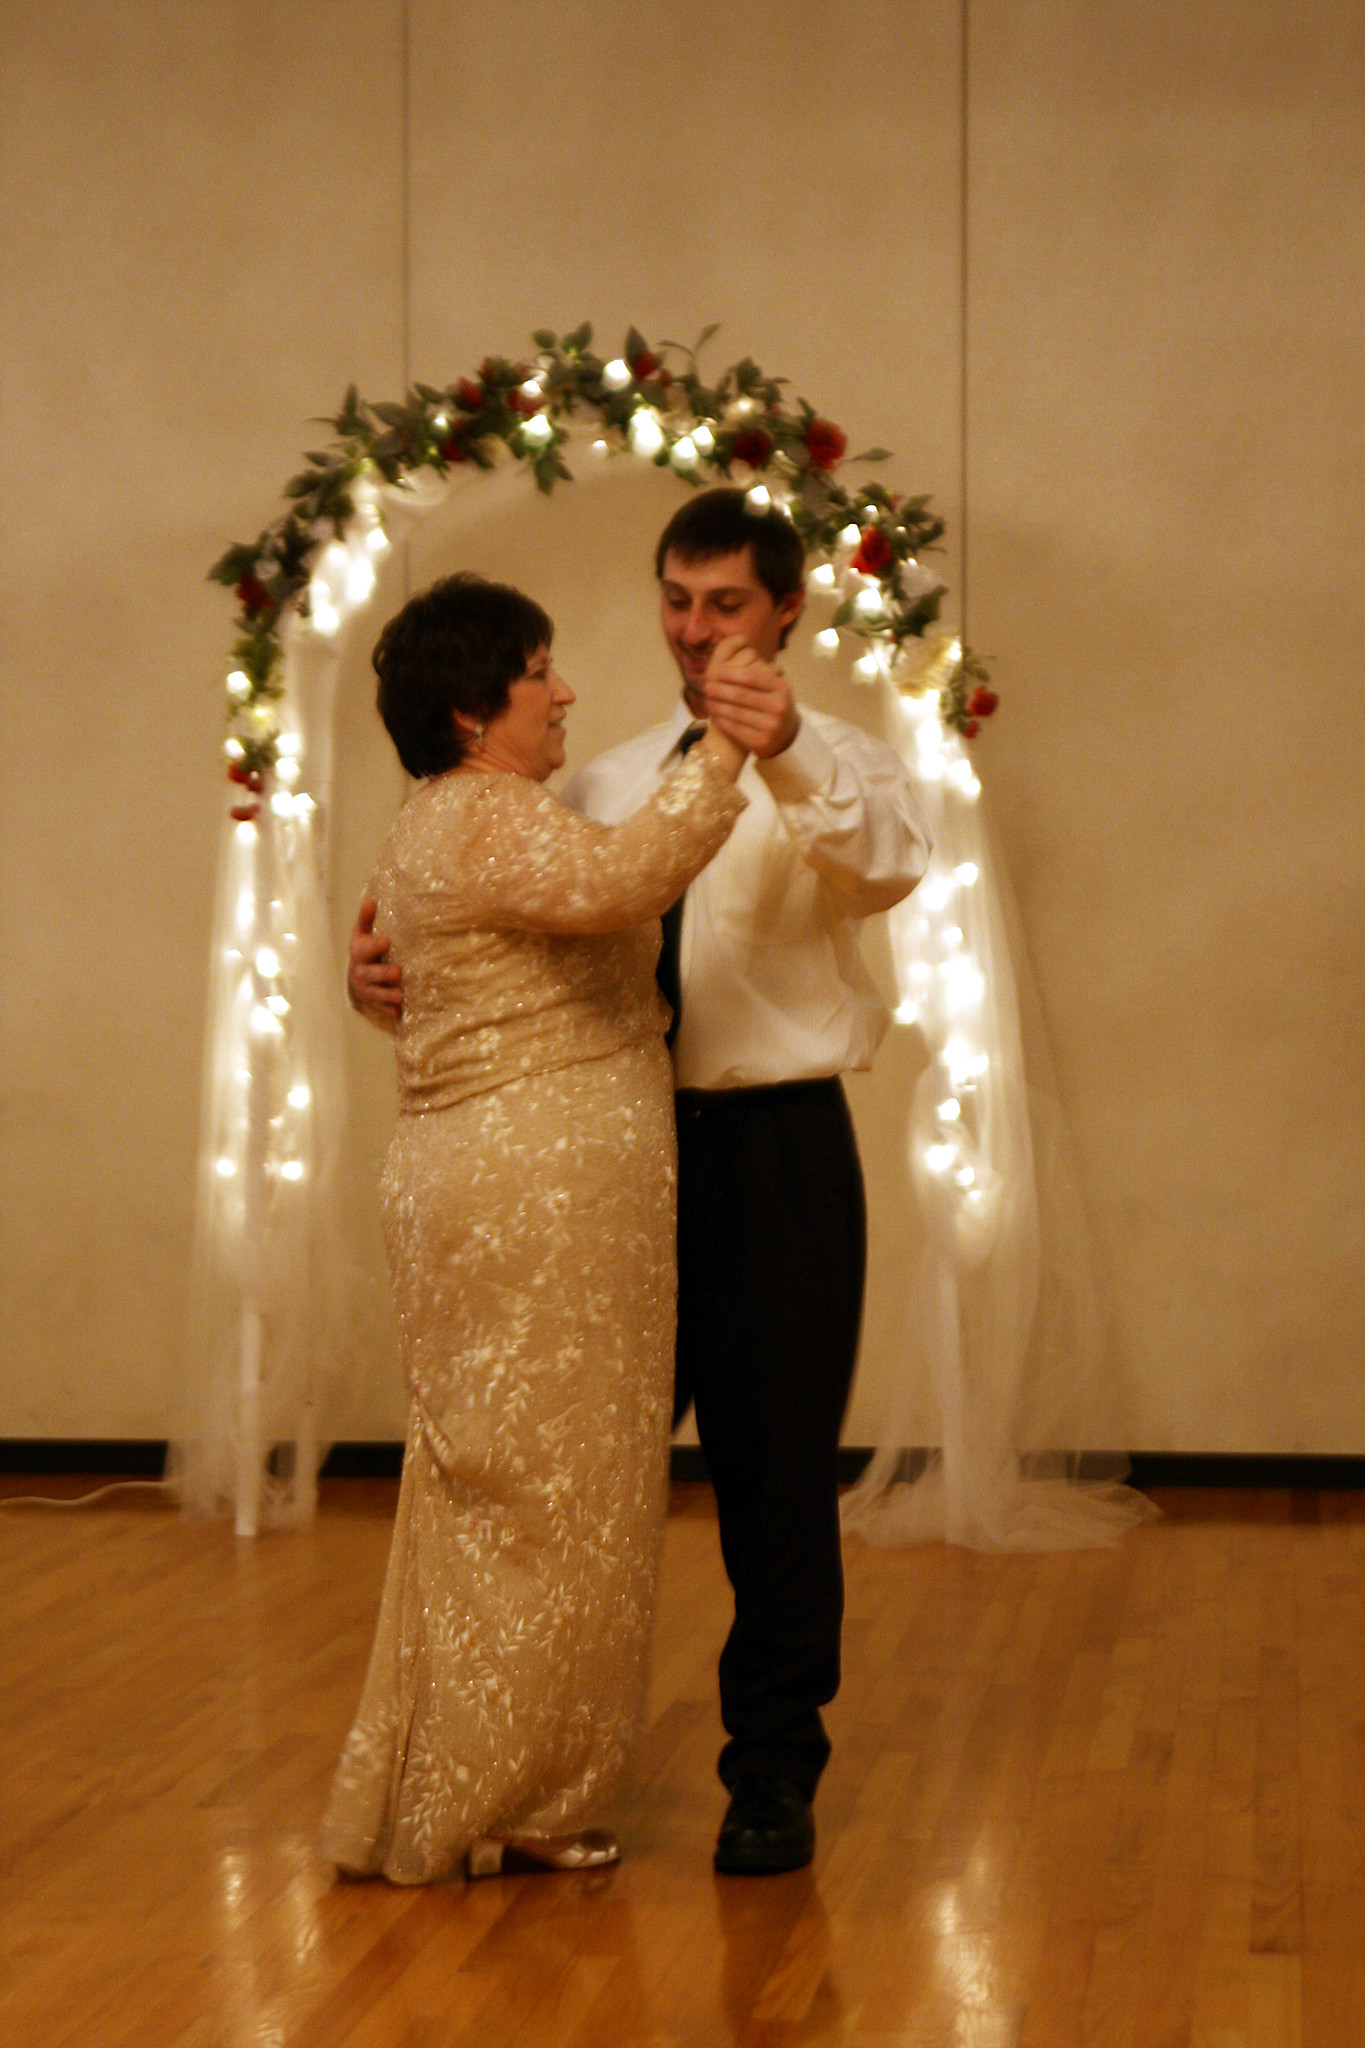 Un fils partageant une danse avec sa mère lors de son mariage | Source: Flickr